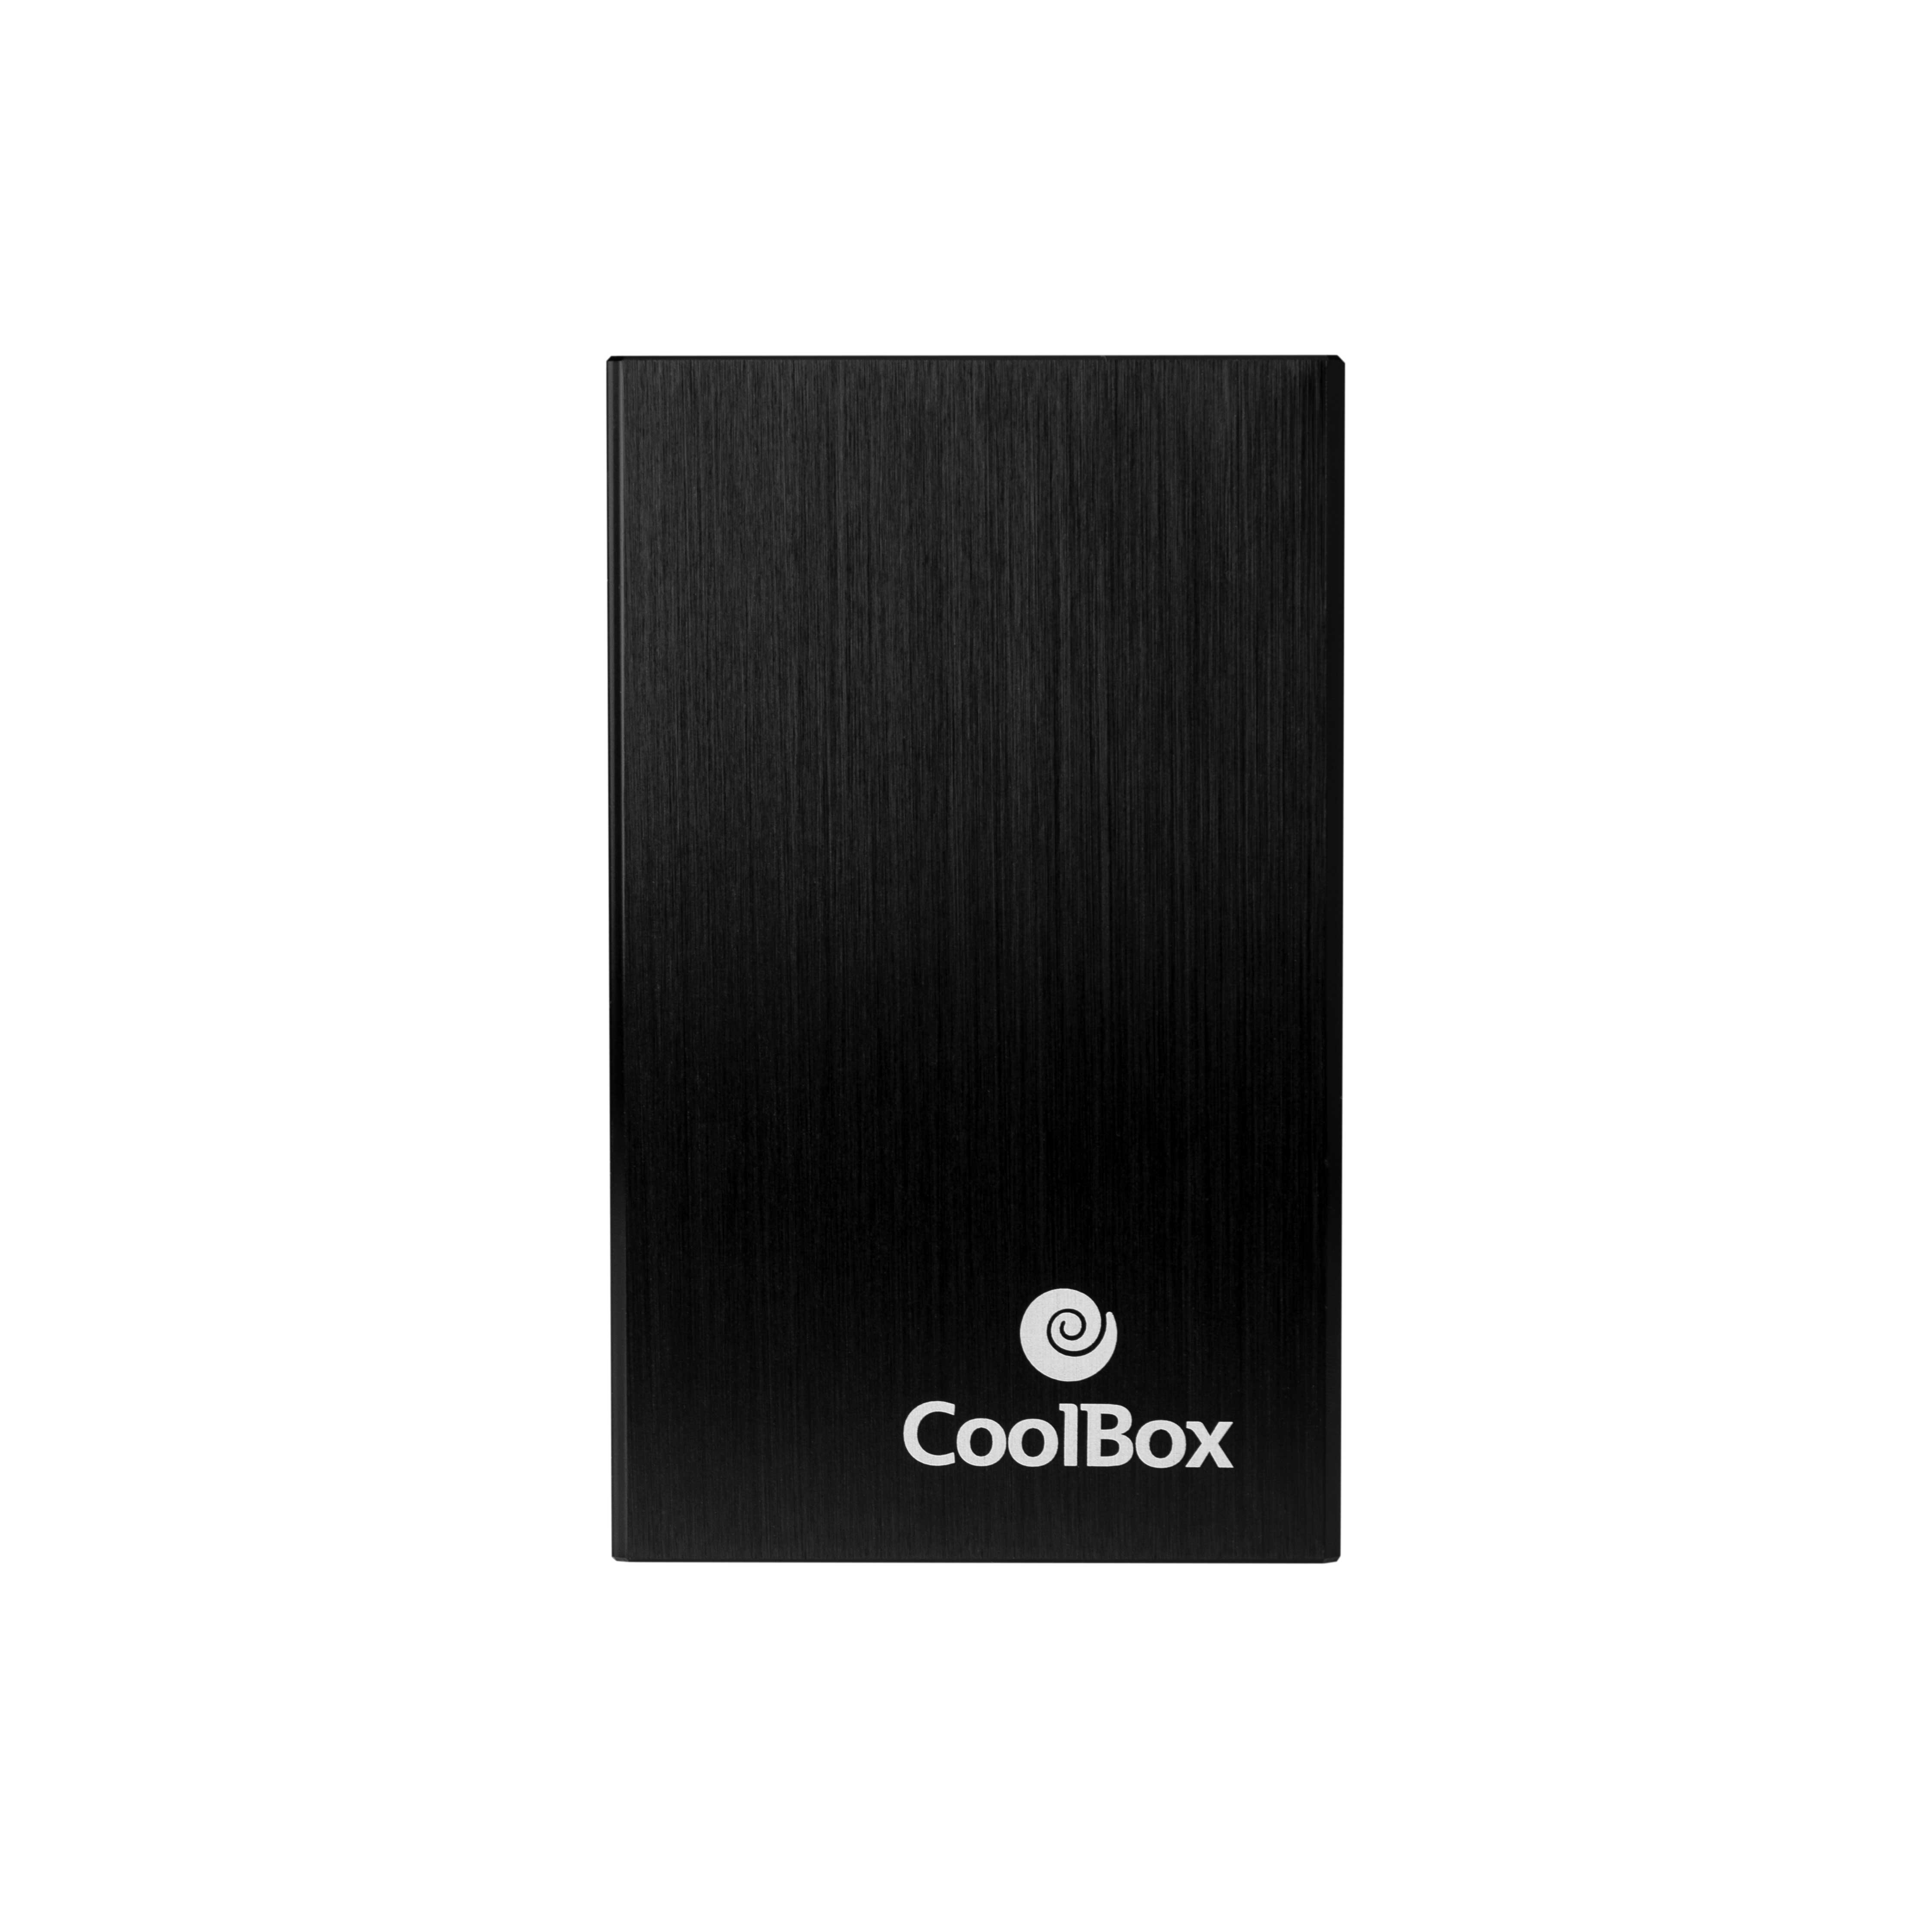 Coolbox - Carcasa externa para discos SSD y HDD SATA de 2.5", Montaje Sencillo sin Tornillos, USB Tipo-C